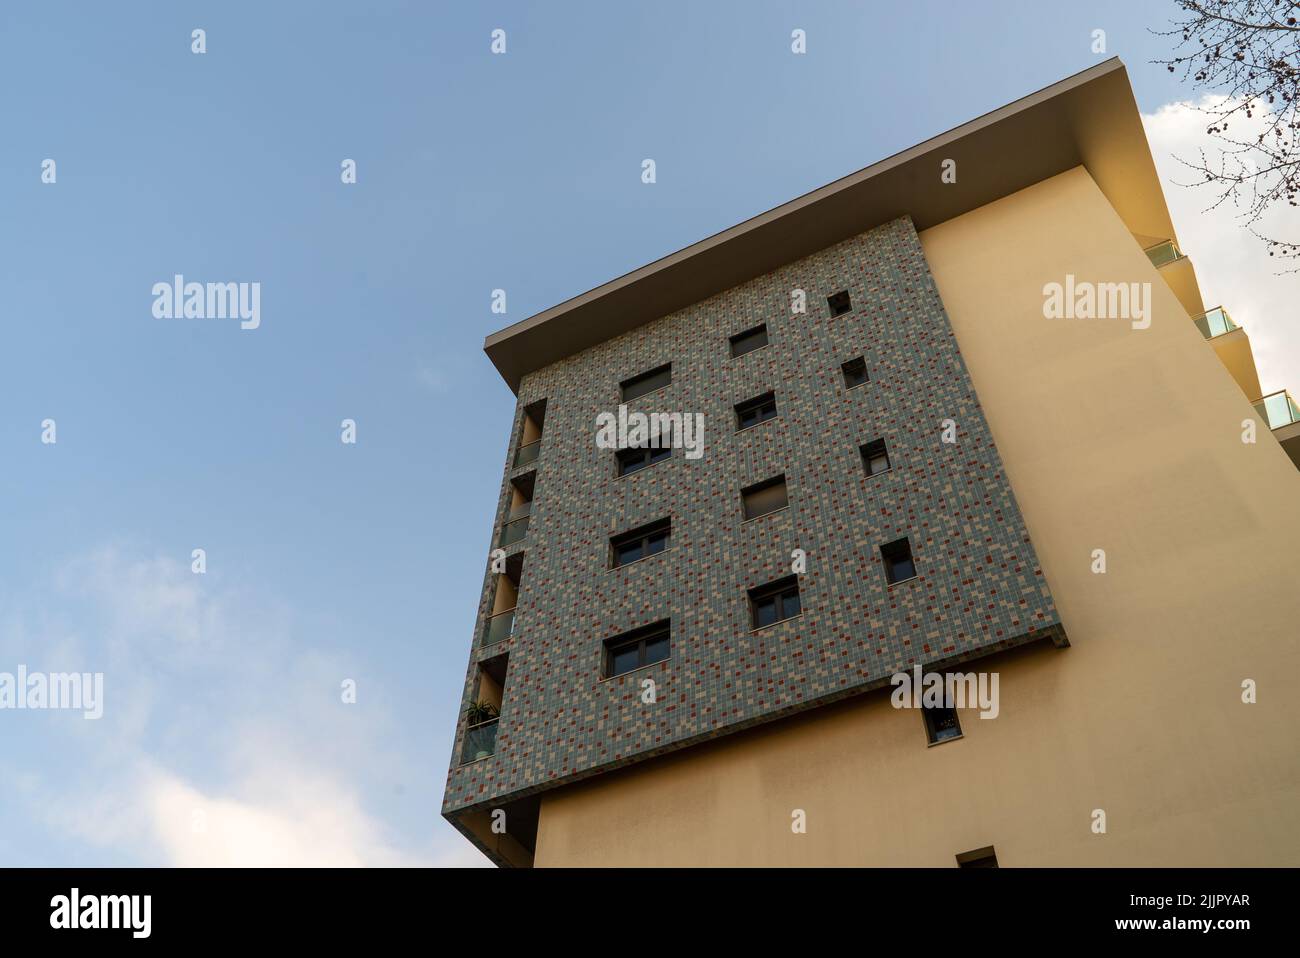 Plano de ángulo bajo con fachada de edificios beige y negro, con los últimos pisos bajo un cielo azul brillante Foto de stock